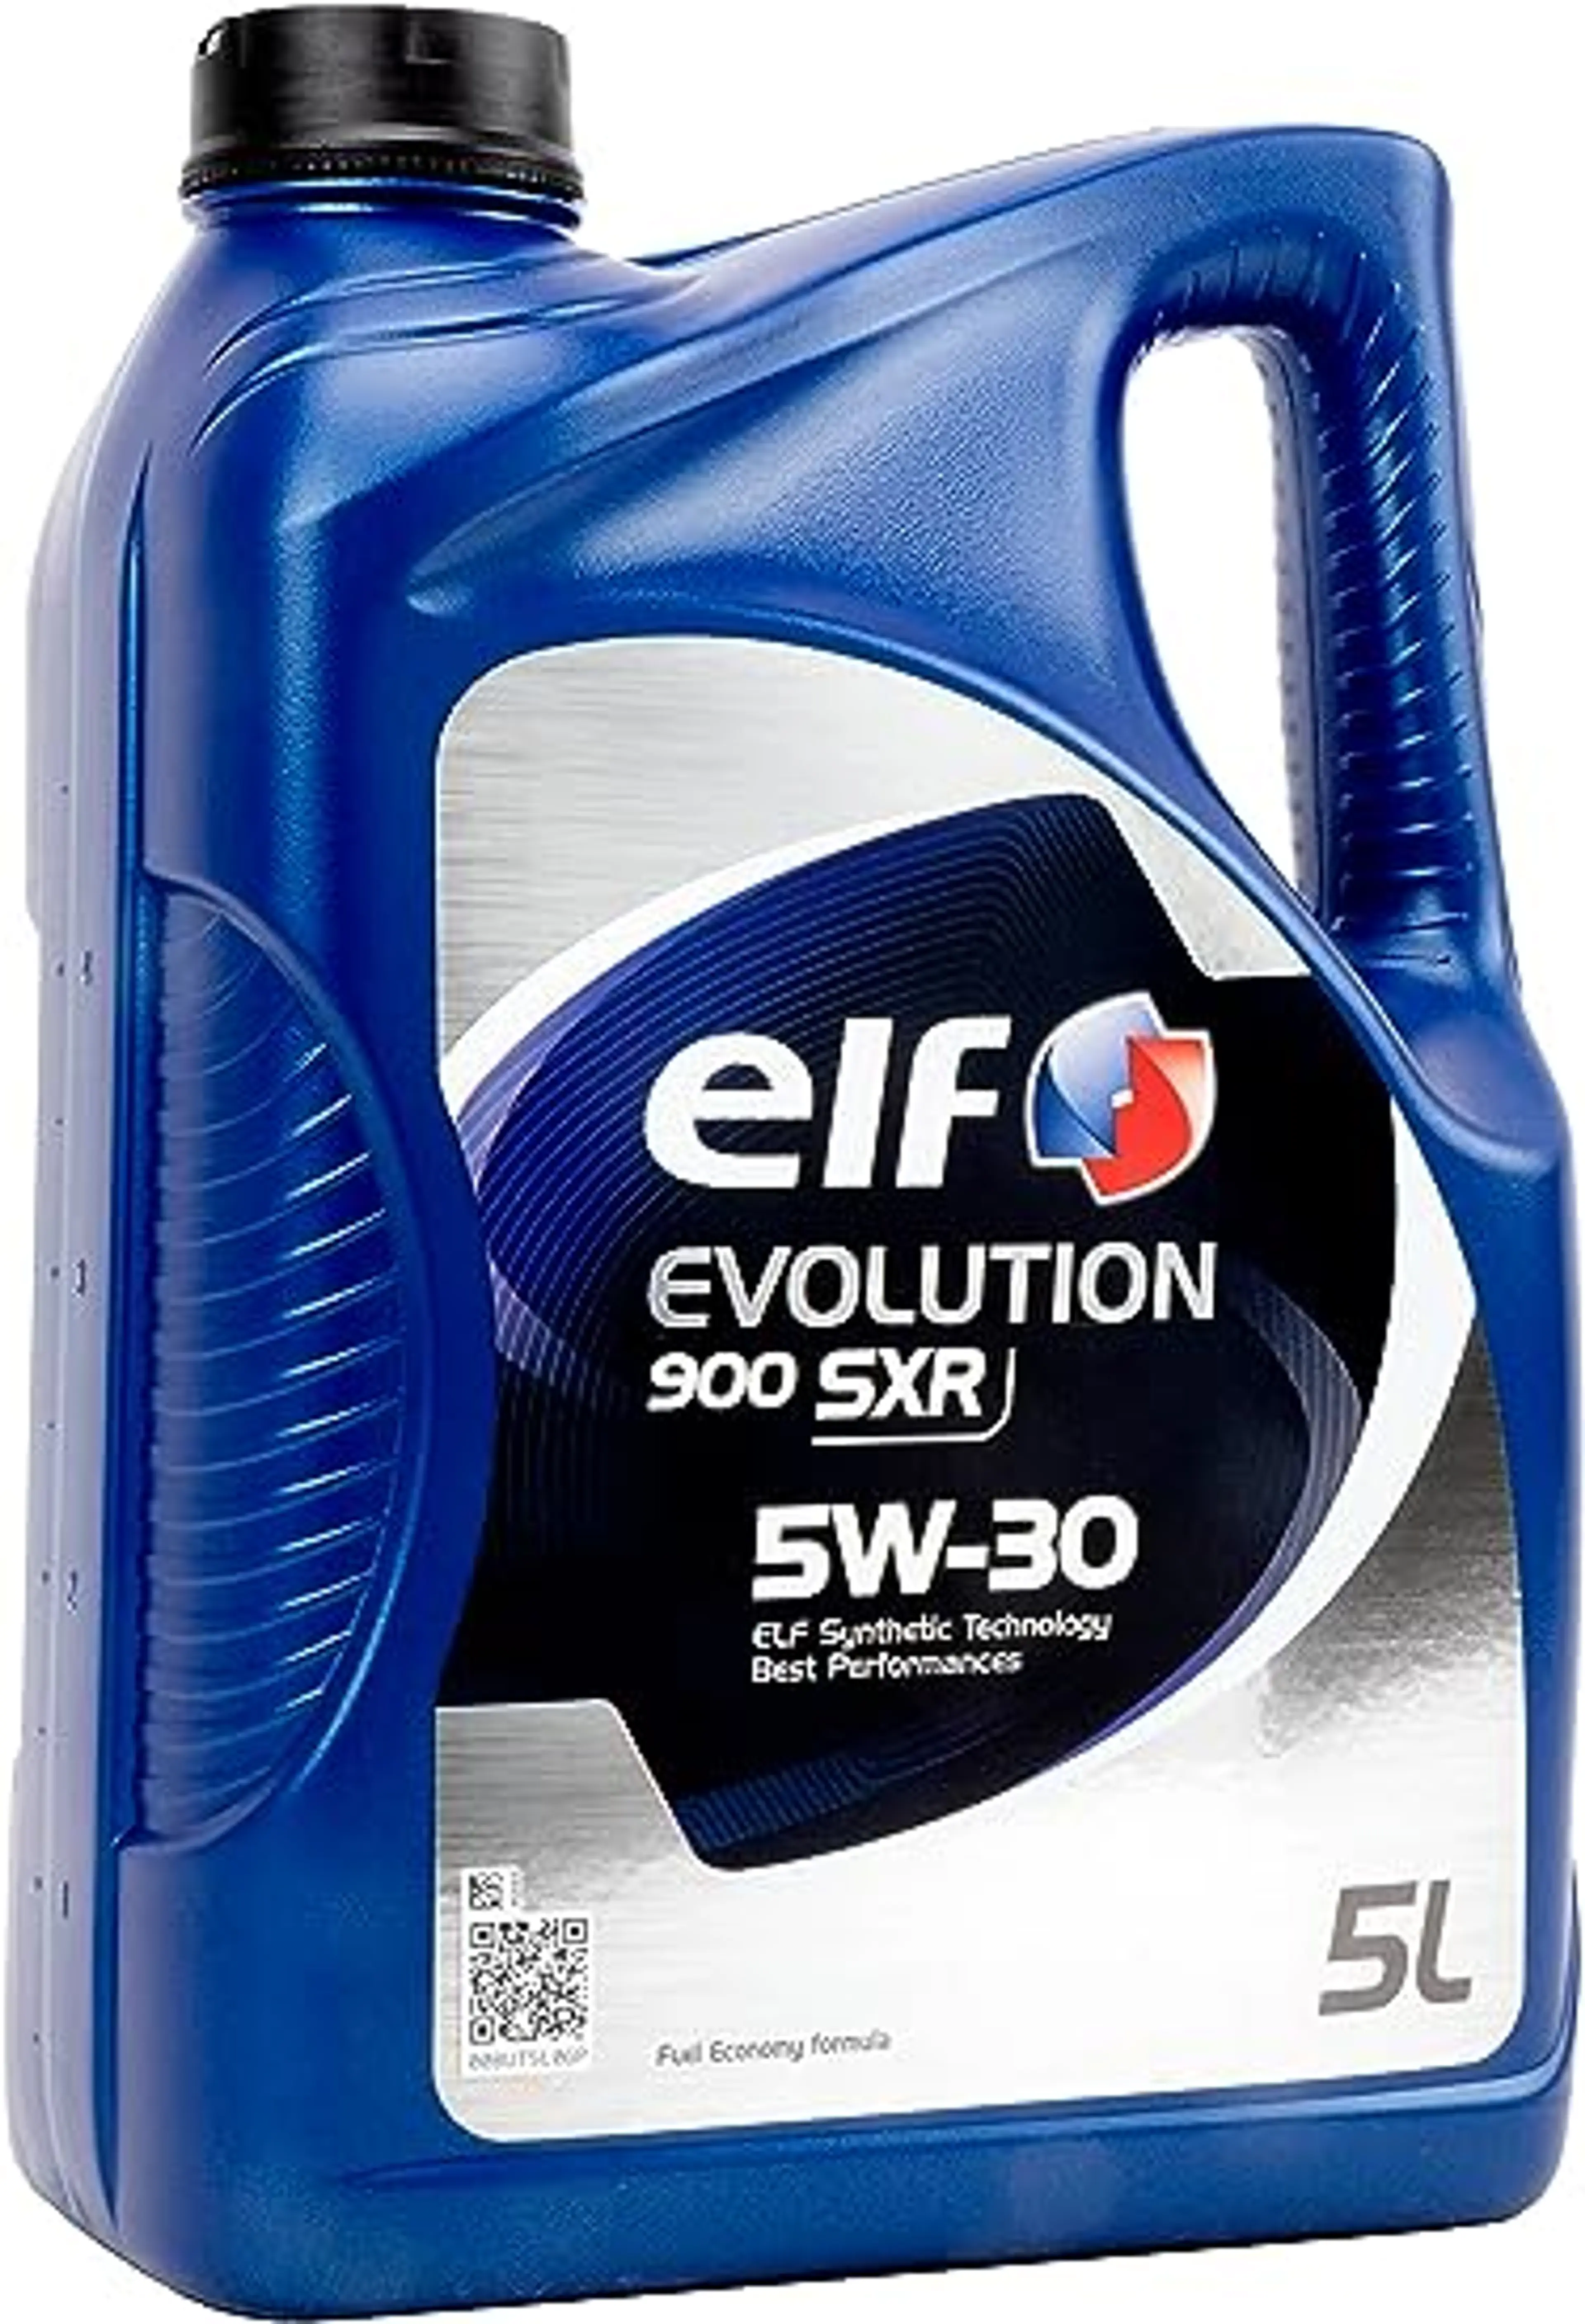 ELF EVOLUTION 900 SXR 5W30 5L.